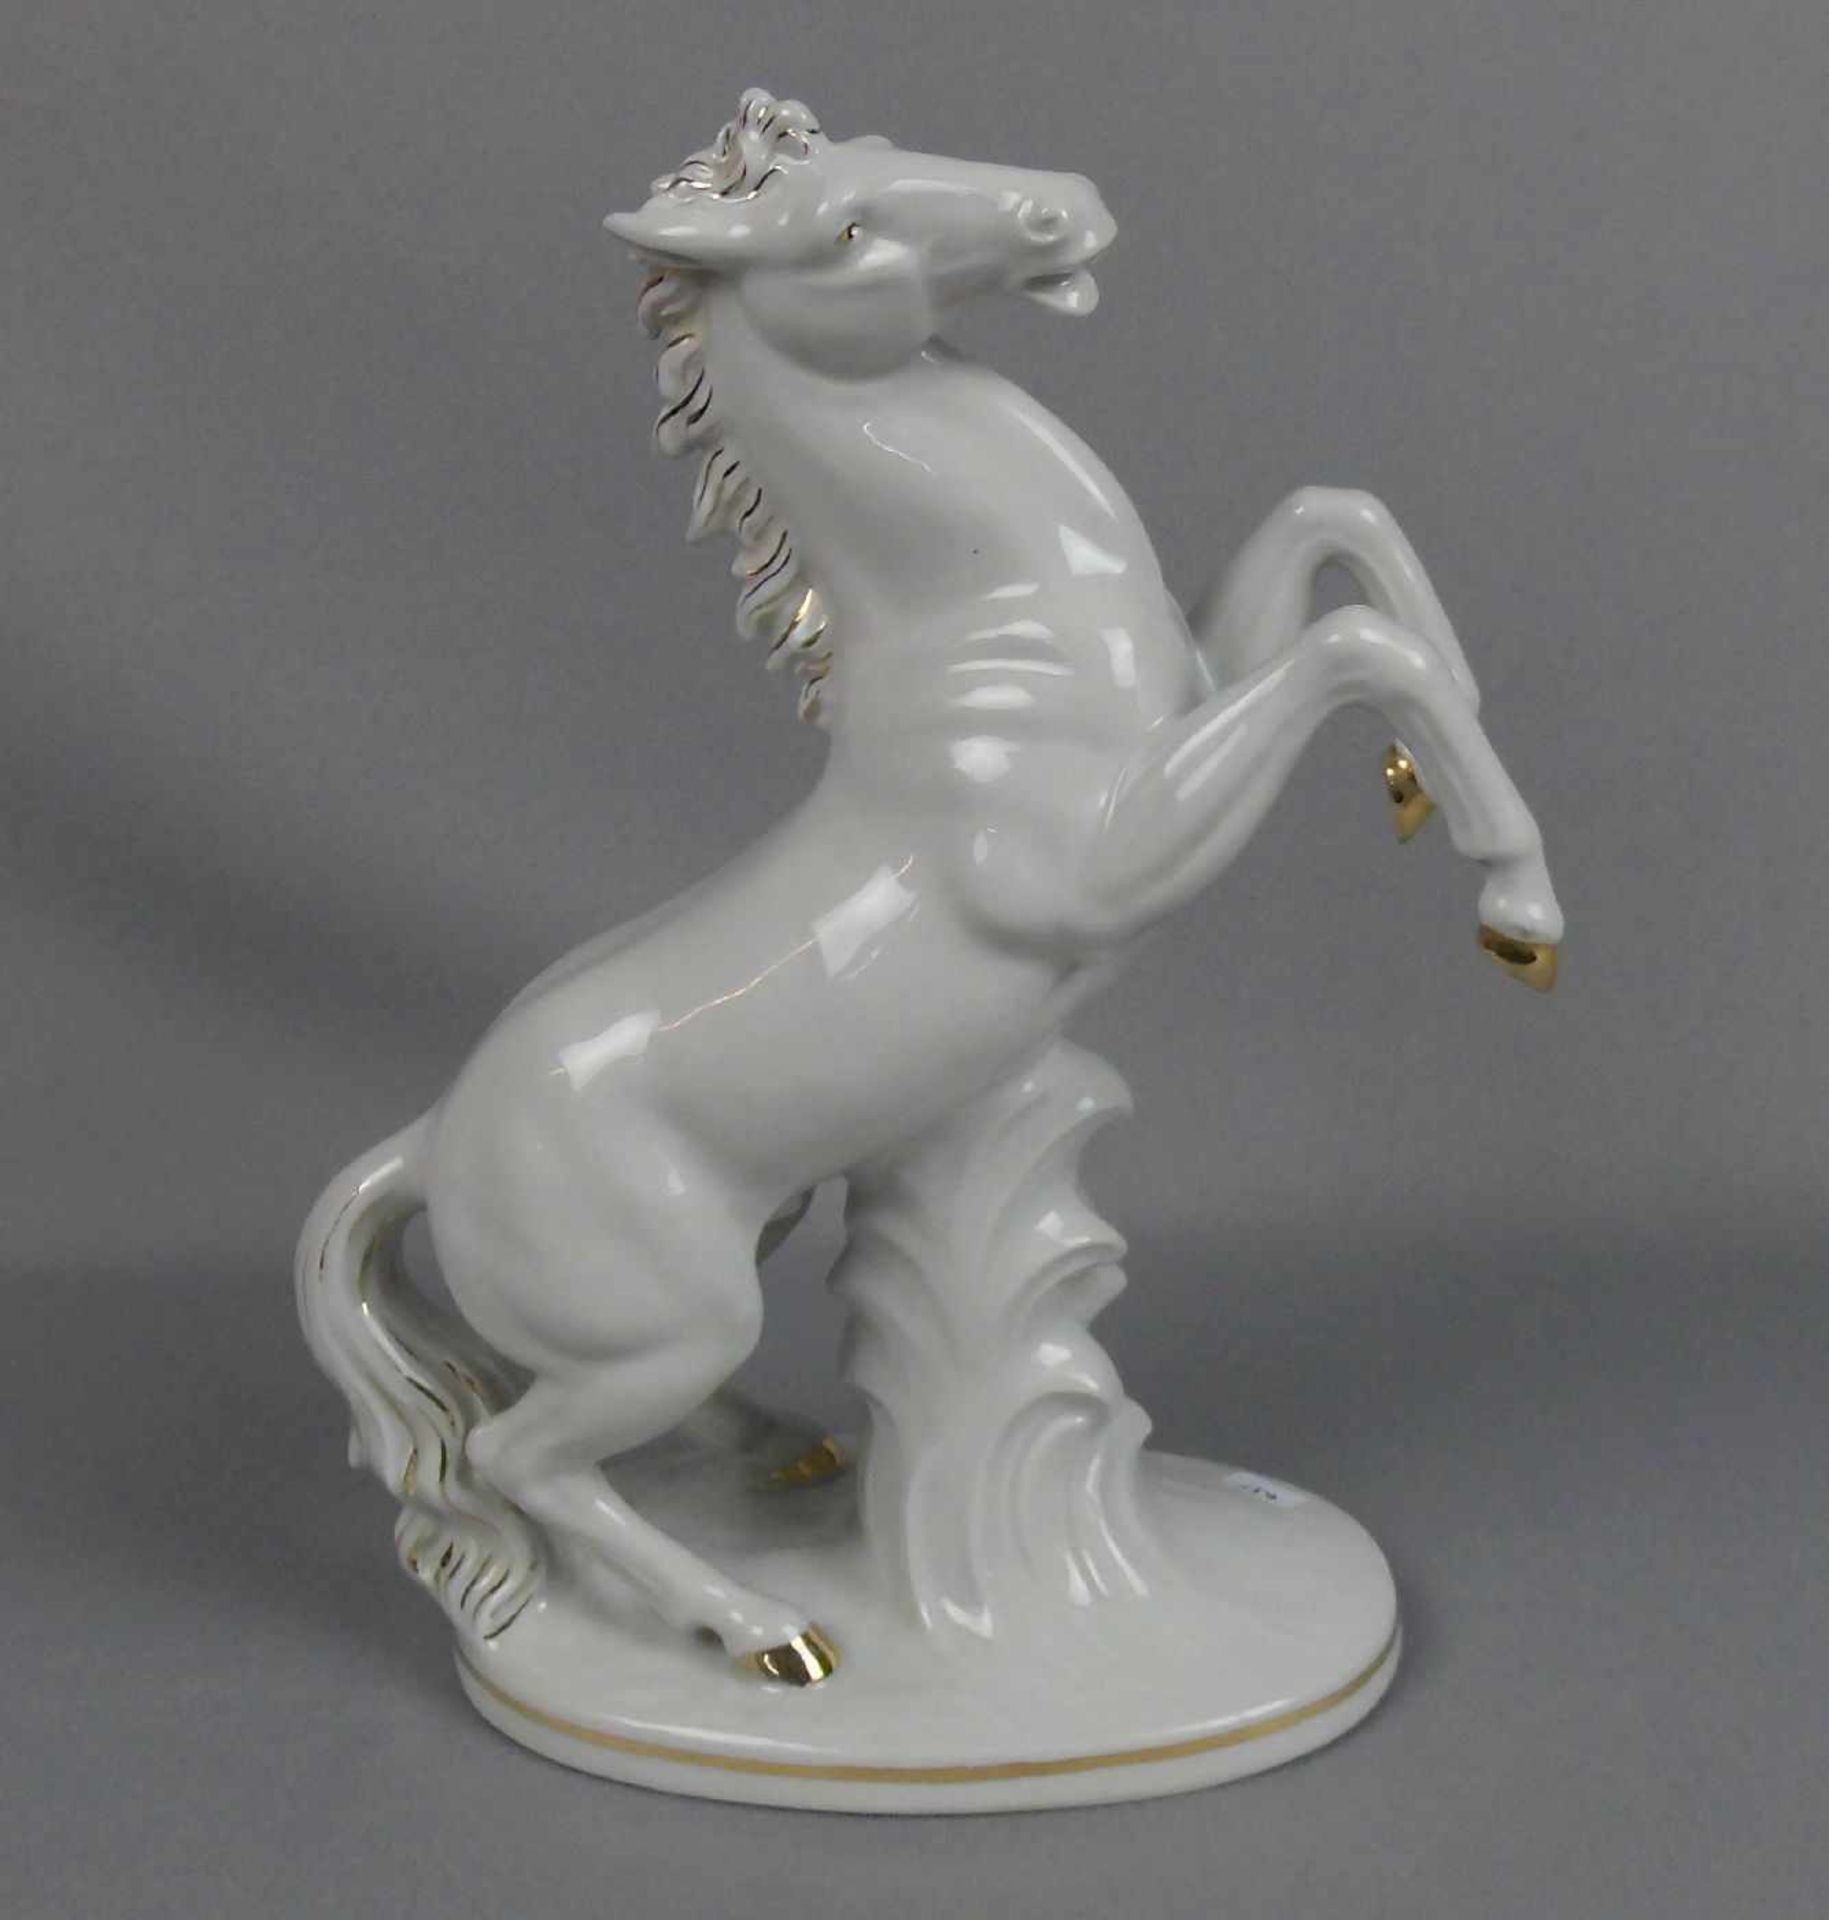 PORZELLANFIGUR "Aufsteigendes Pferd", vertieft gemarkt WKC, Porzellanmanufaktur Weiss / Kühnert & Co - Bild 3 aus 4